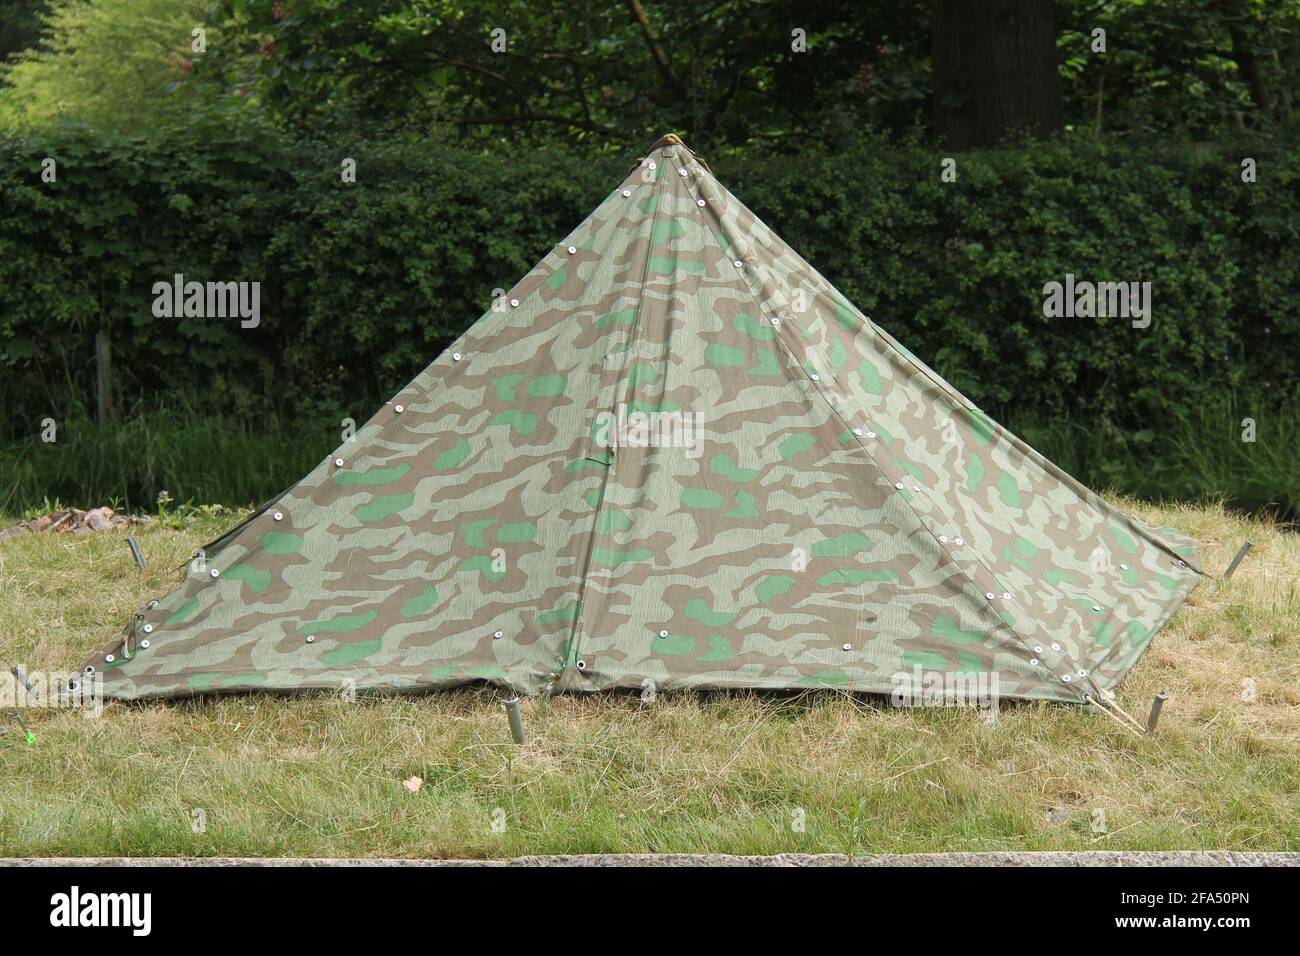 Une tente militaire en toile de style Triangular. Banque D'Images